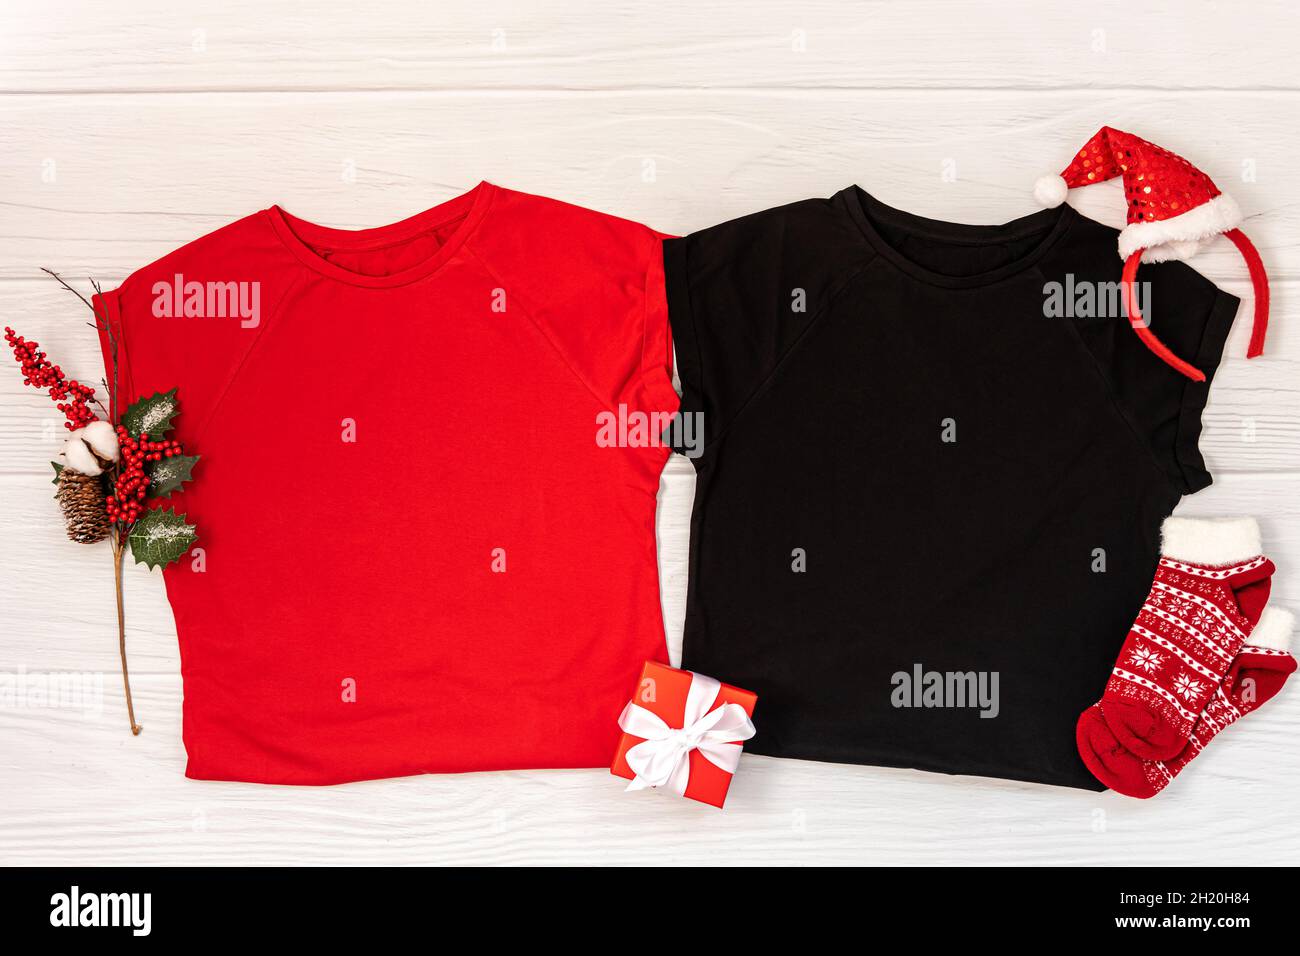 Red and black tshirt christmas mockup Stock Photo